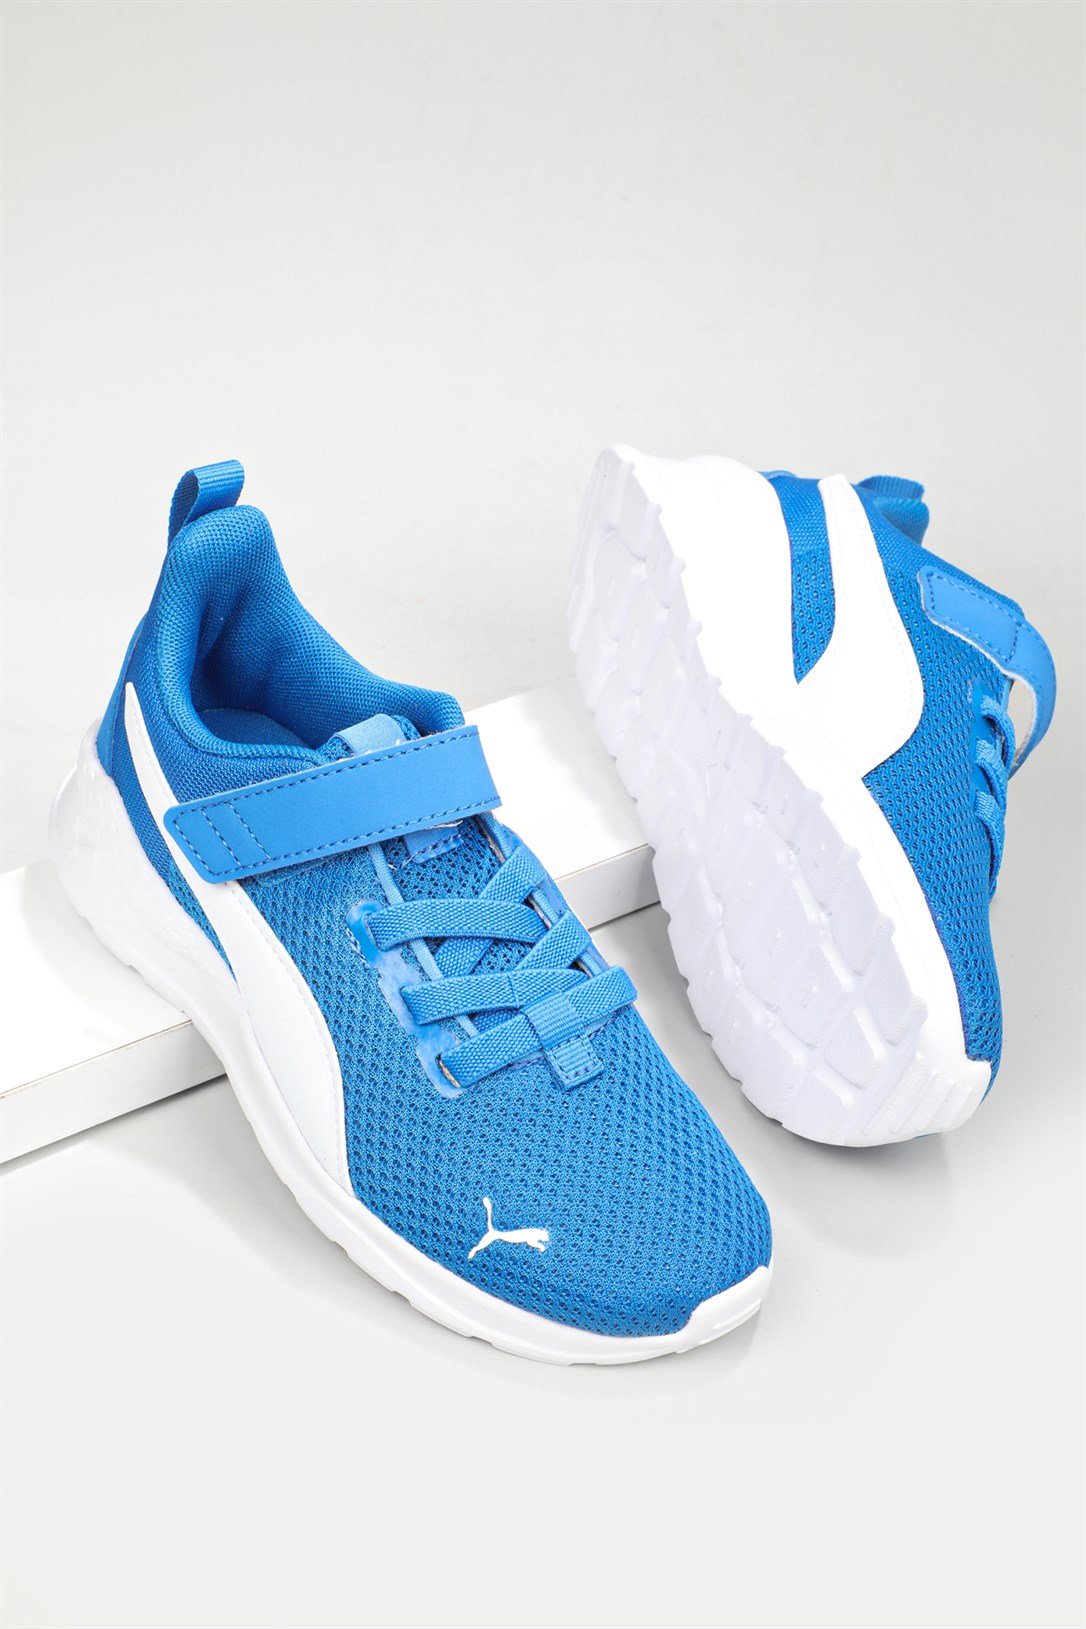 Puma Günlük Koşu Yürüyüş Sax Mavi Beyaz Çocuk Spor Ayakkabı 372009-20 |  Ayakkabı City